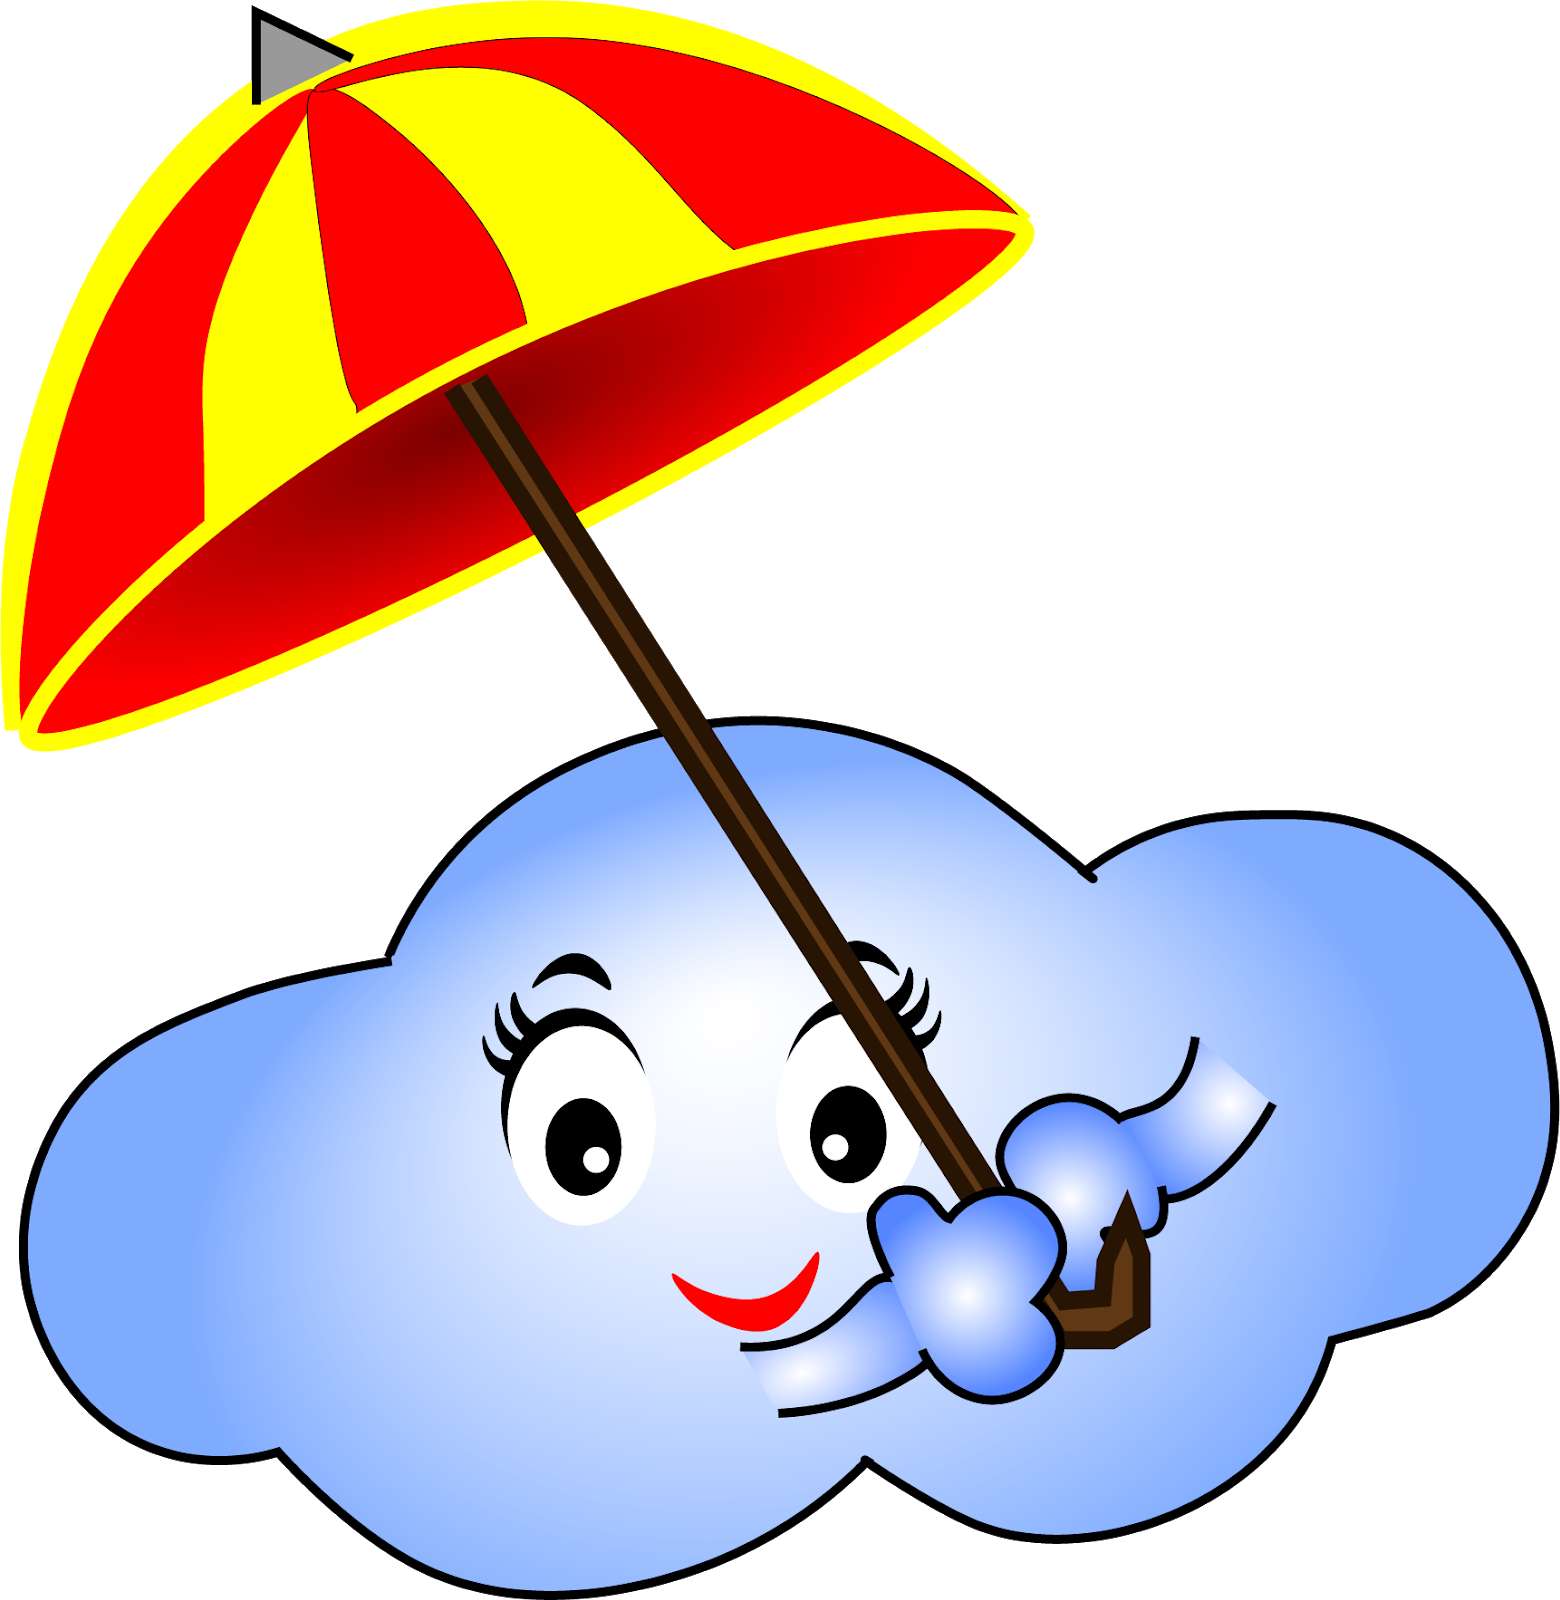 A Cartoon Of A Cloud With A Umbrella